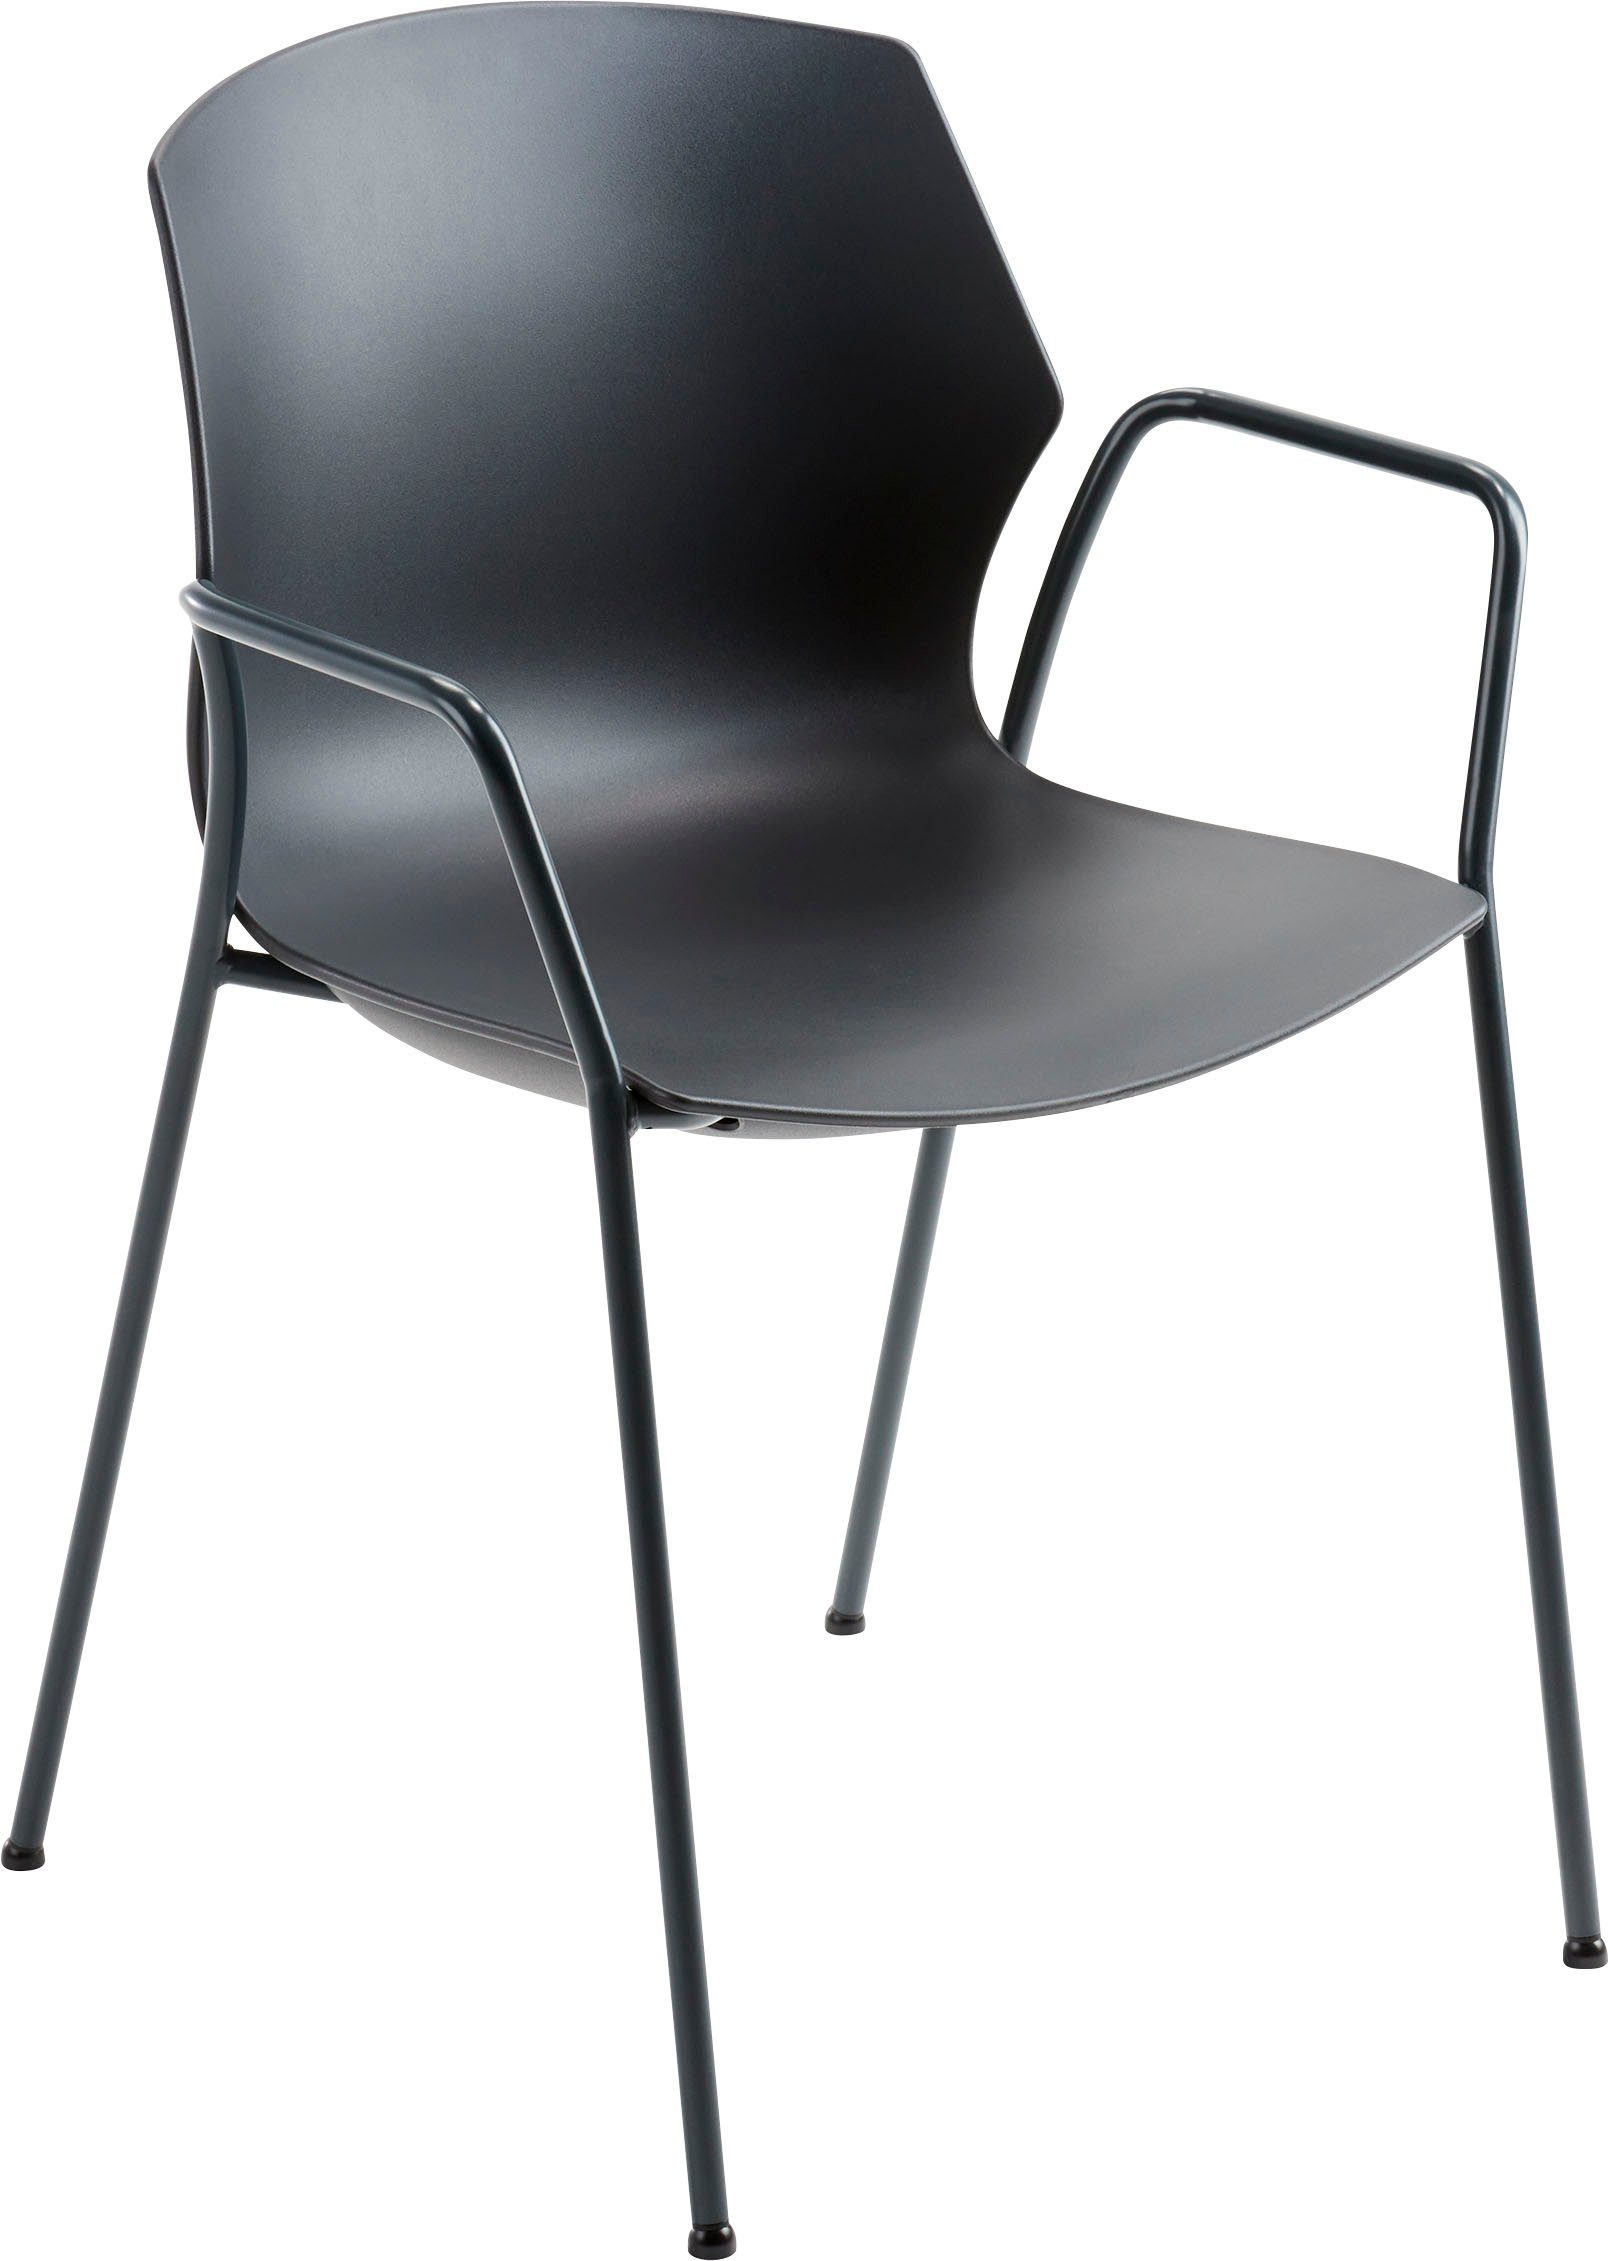 Stapelstuhl Sitzschale Komfort myPRIMO, Sitzmöbel Mayer Stapelstuhl mit stapelbar, hohem